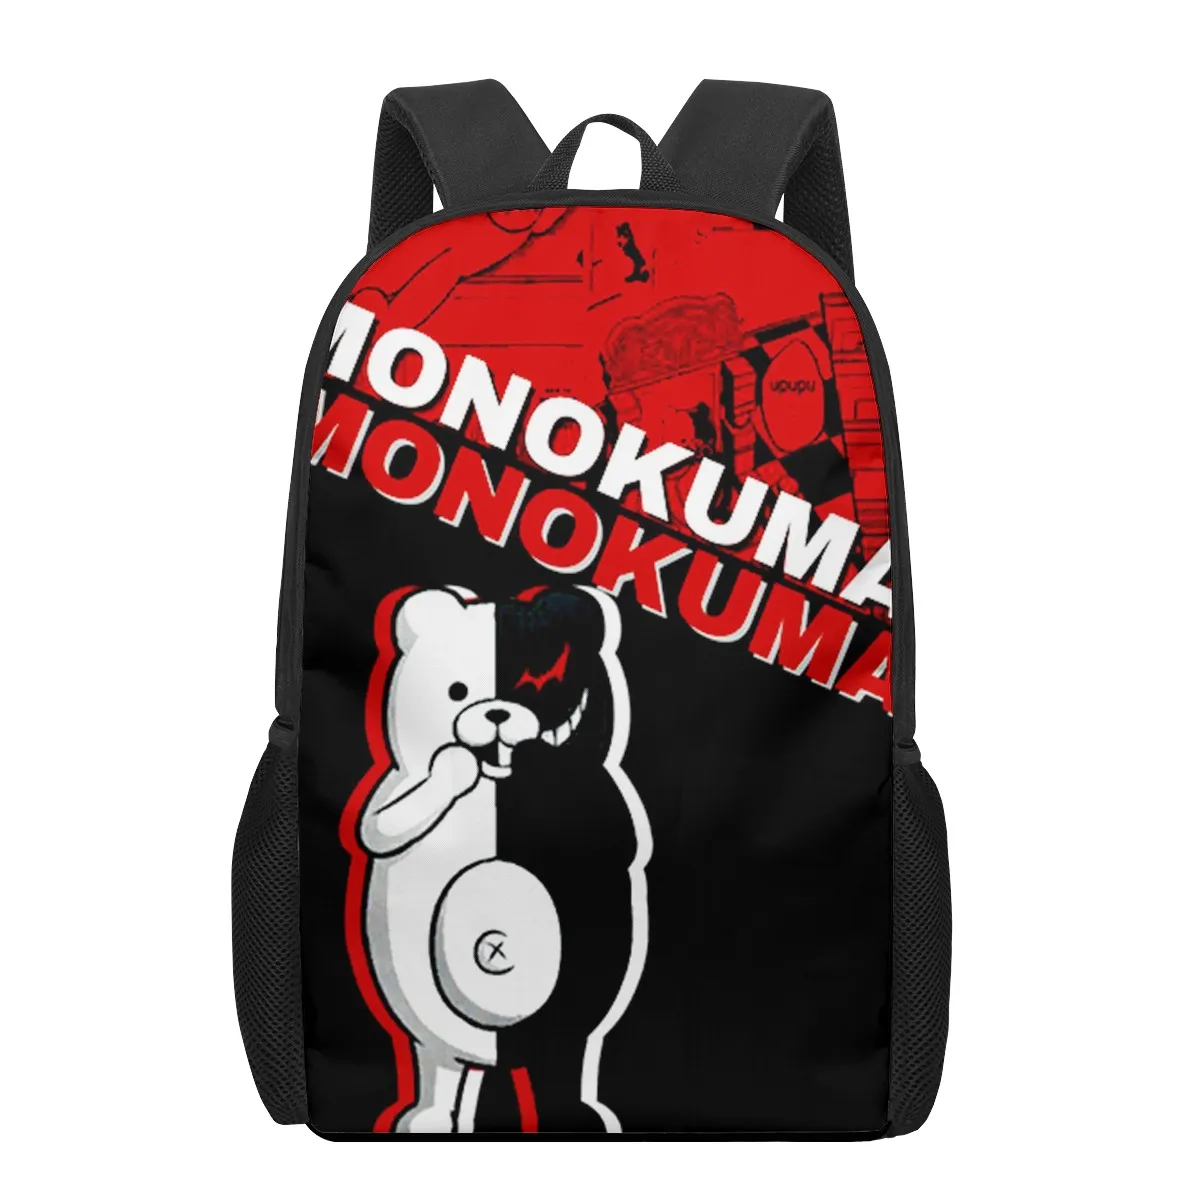 "Danganronpa Monokuma аниме 3D печать, ранцы для девочек начальной школы, Детская сумка для книг, ранец, рюкзак"